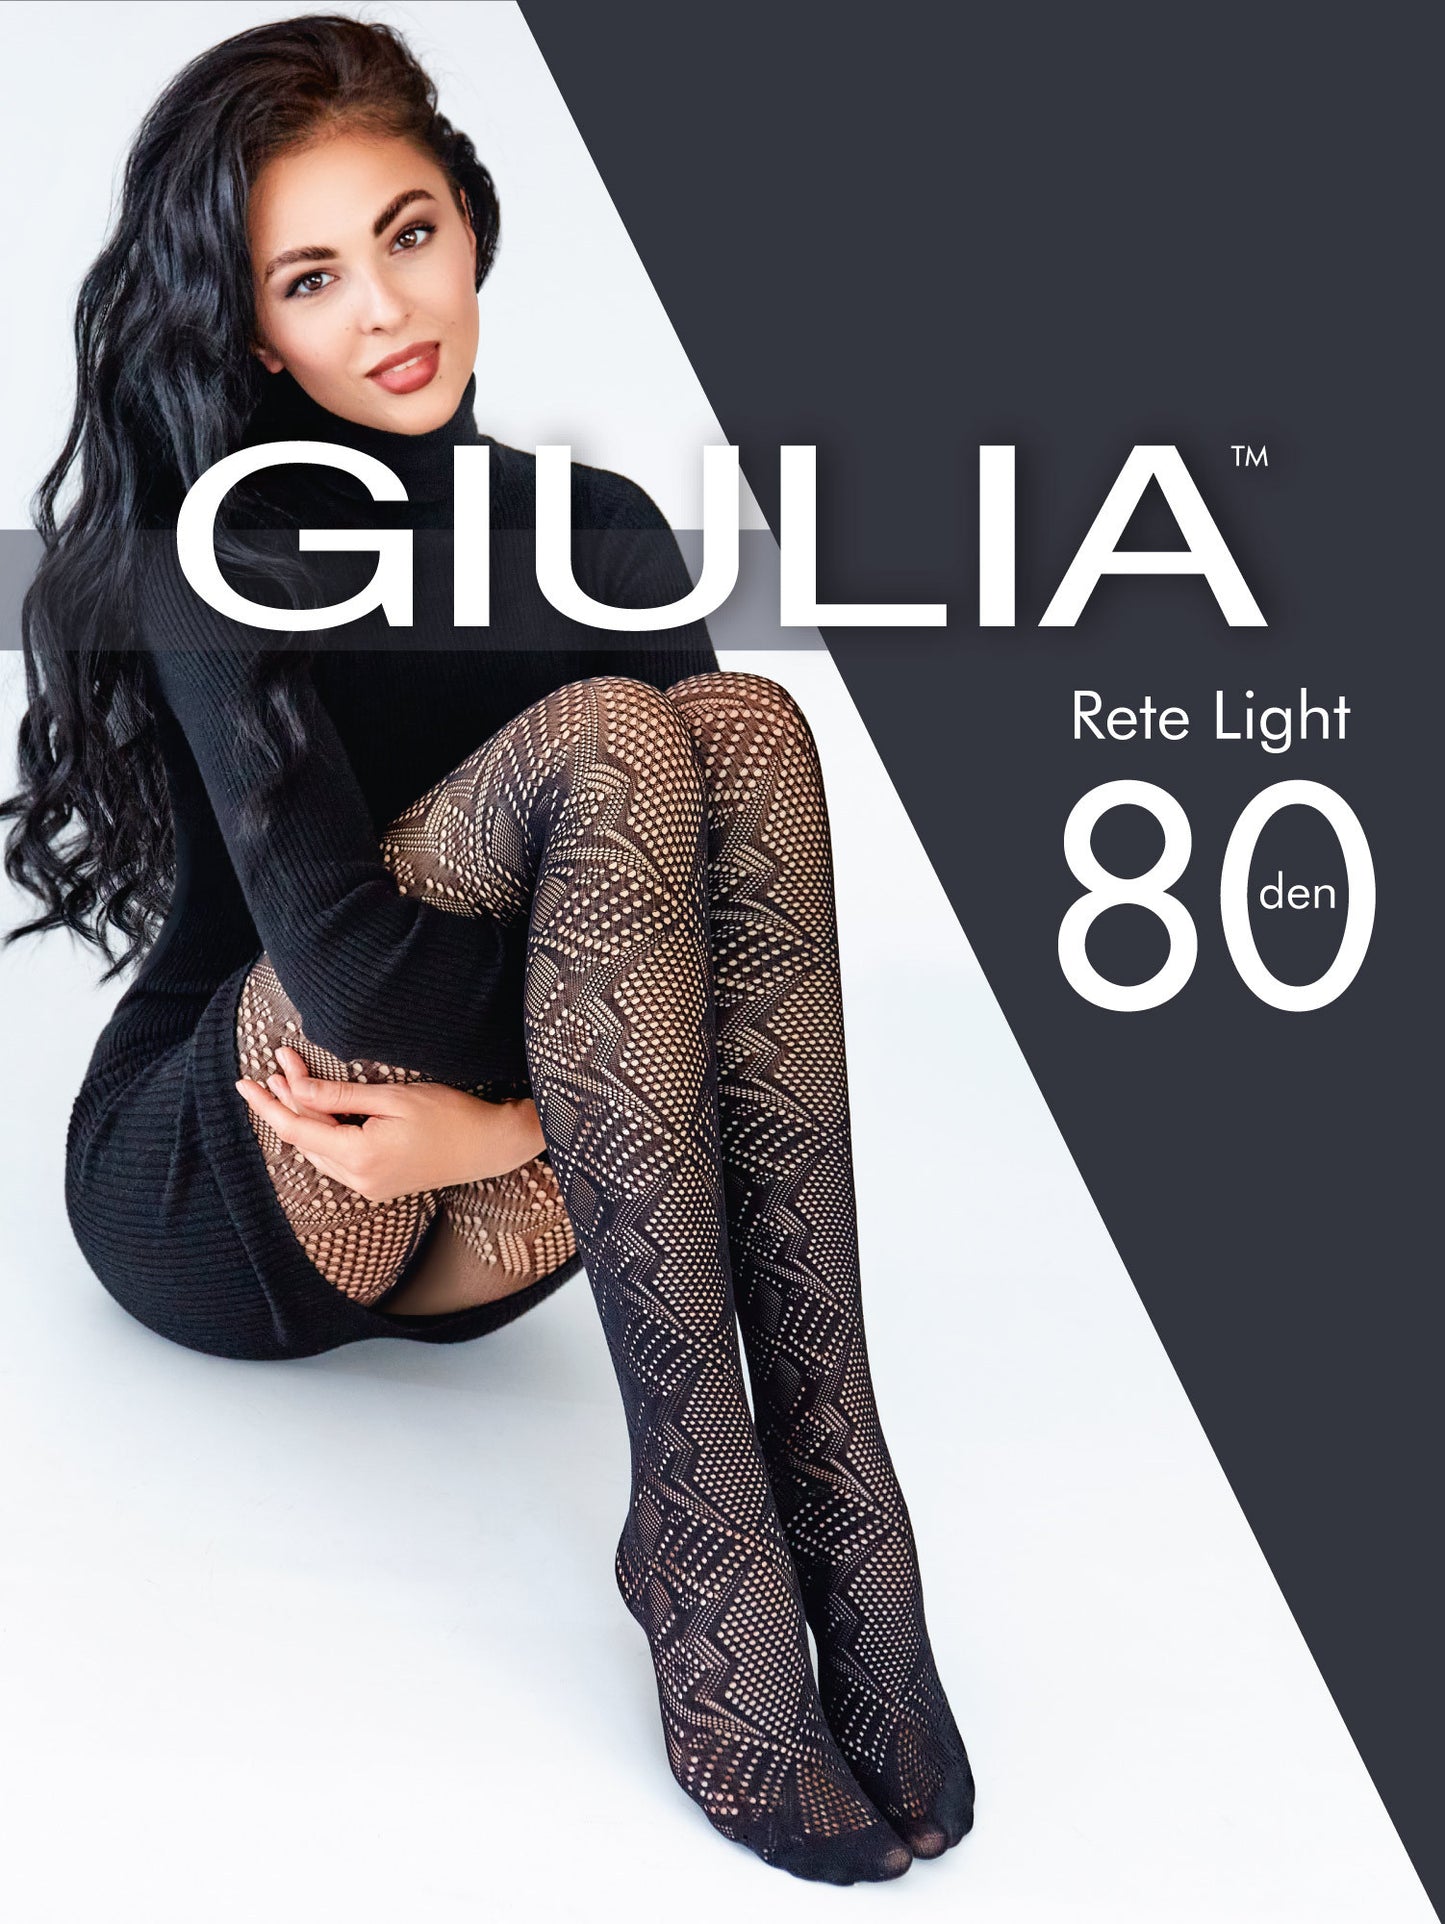 Giulia - Culotte Rete Light Tissue 80den avec motif géométrique